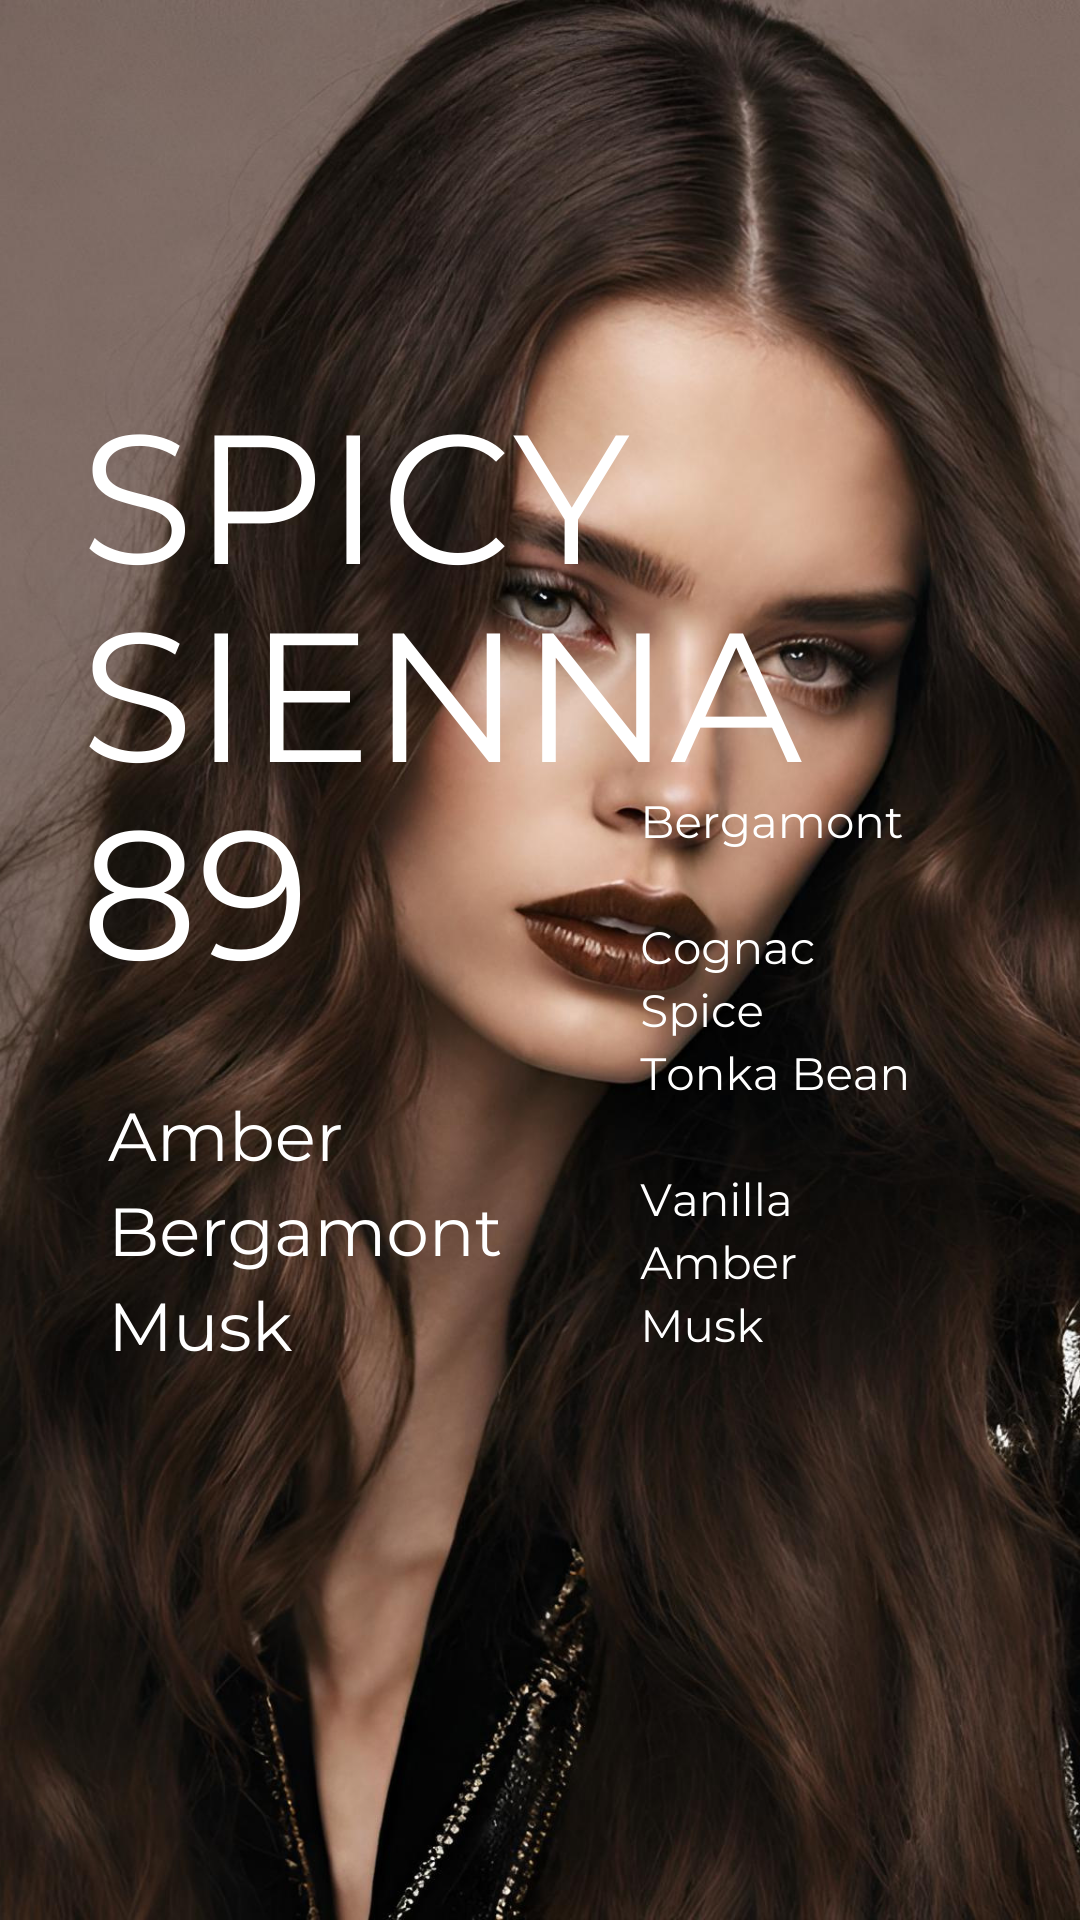 SPICY SIENNA 89 Parfum-A Spicy Amber Bergamot Scent